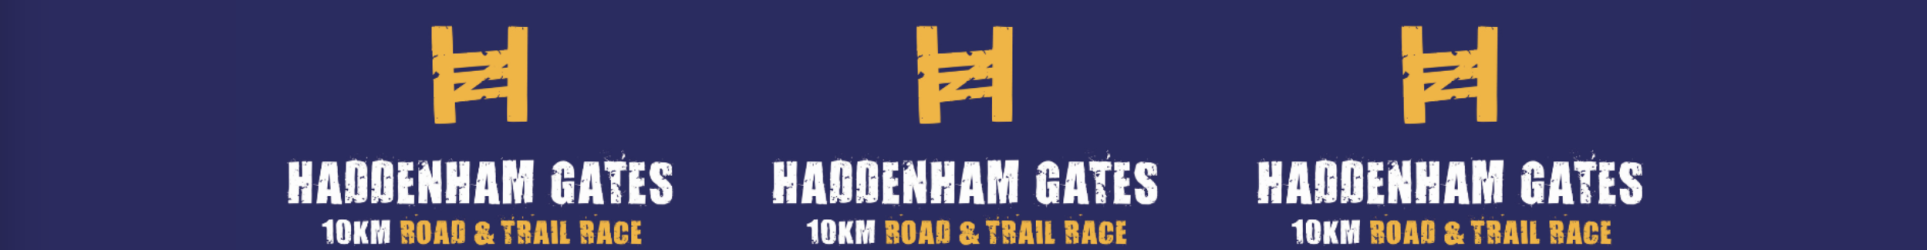 Haddenham Gates Road & Trail Race